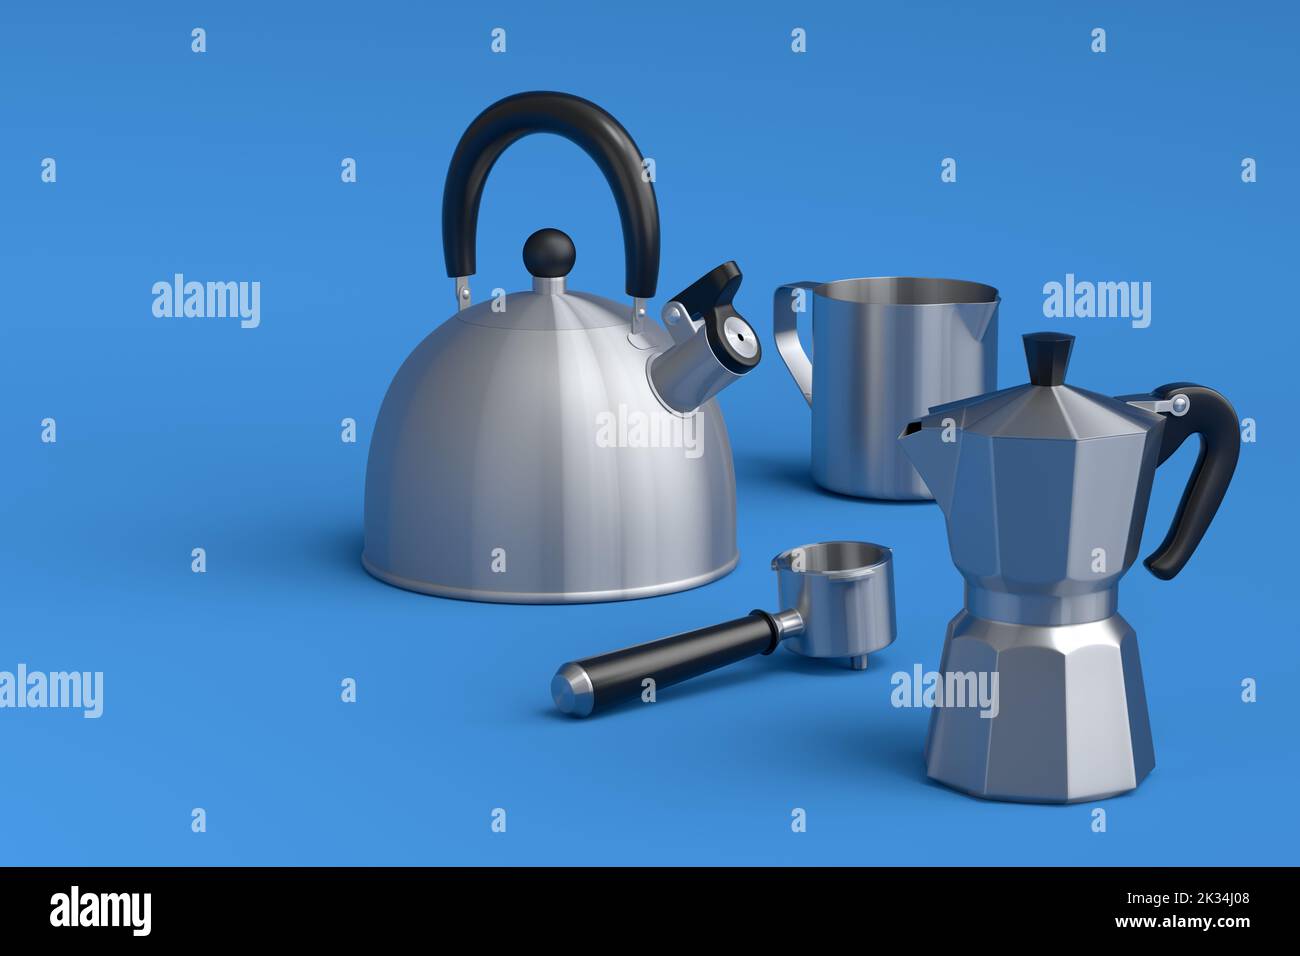 Hãy cùng tìm hiểu về máy pha cà phê Espresso, ấm đun nước sừng cổ điển và máy pha cà phê geyser trong hình ảnh này. Đây là những thiết bị cần thiết cho những tách cà phê thơm ngon, một cách nhanh chóng và tiện lợi.